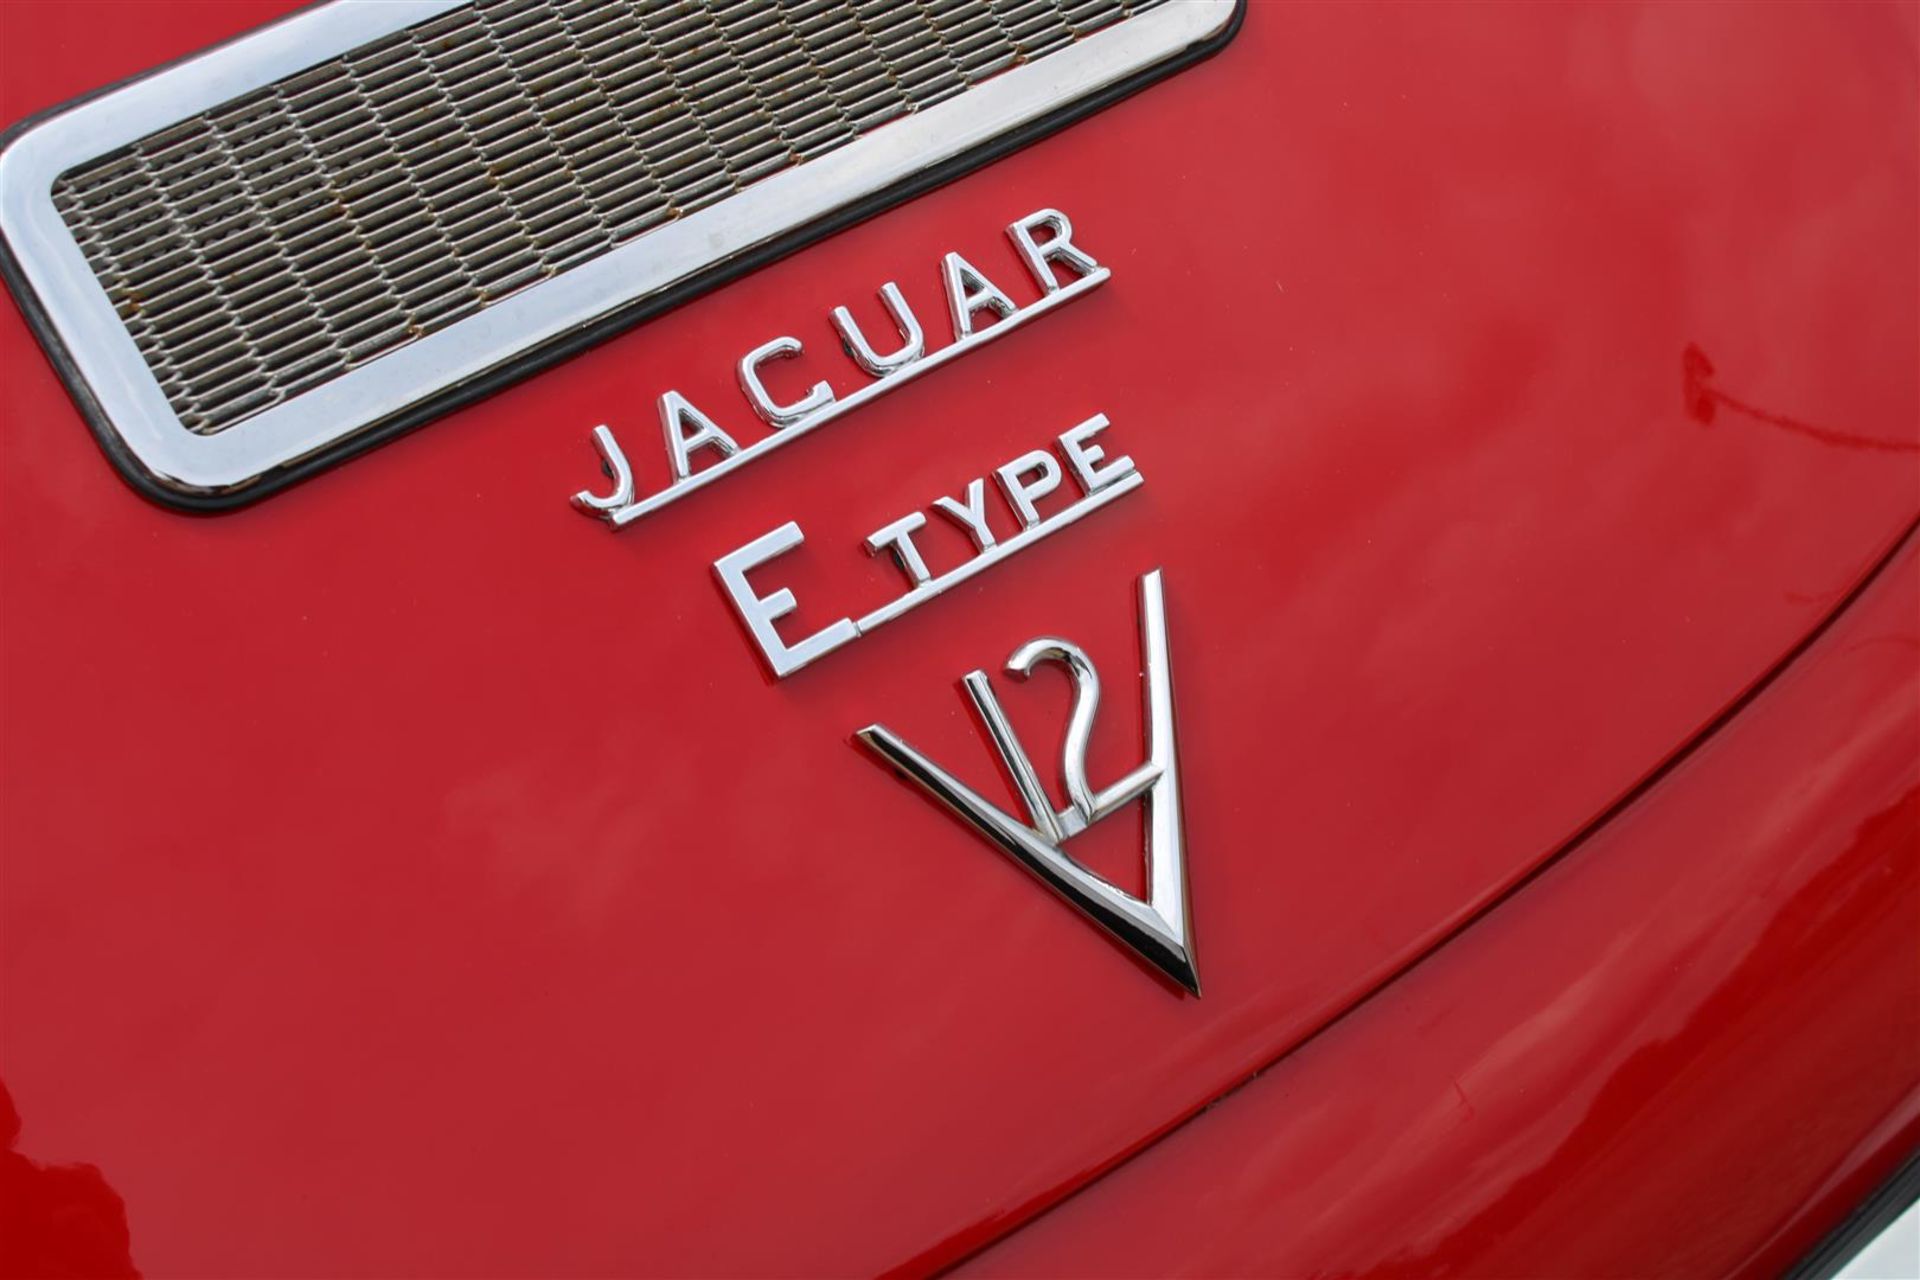 1973 Jaguar E-Type 2+2 FHC 5.3 V12 Series III - Image 26 of 26